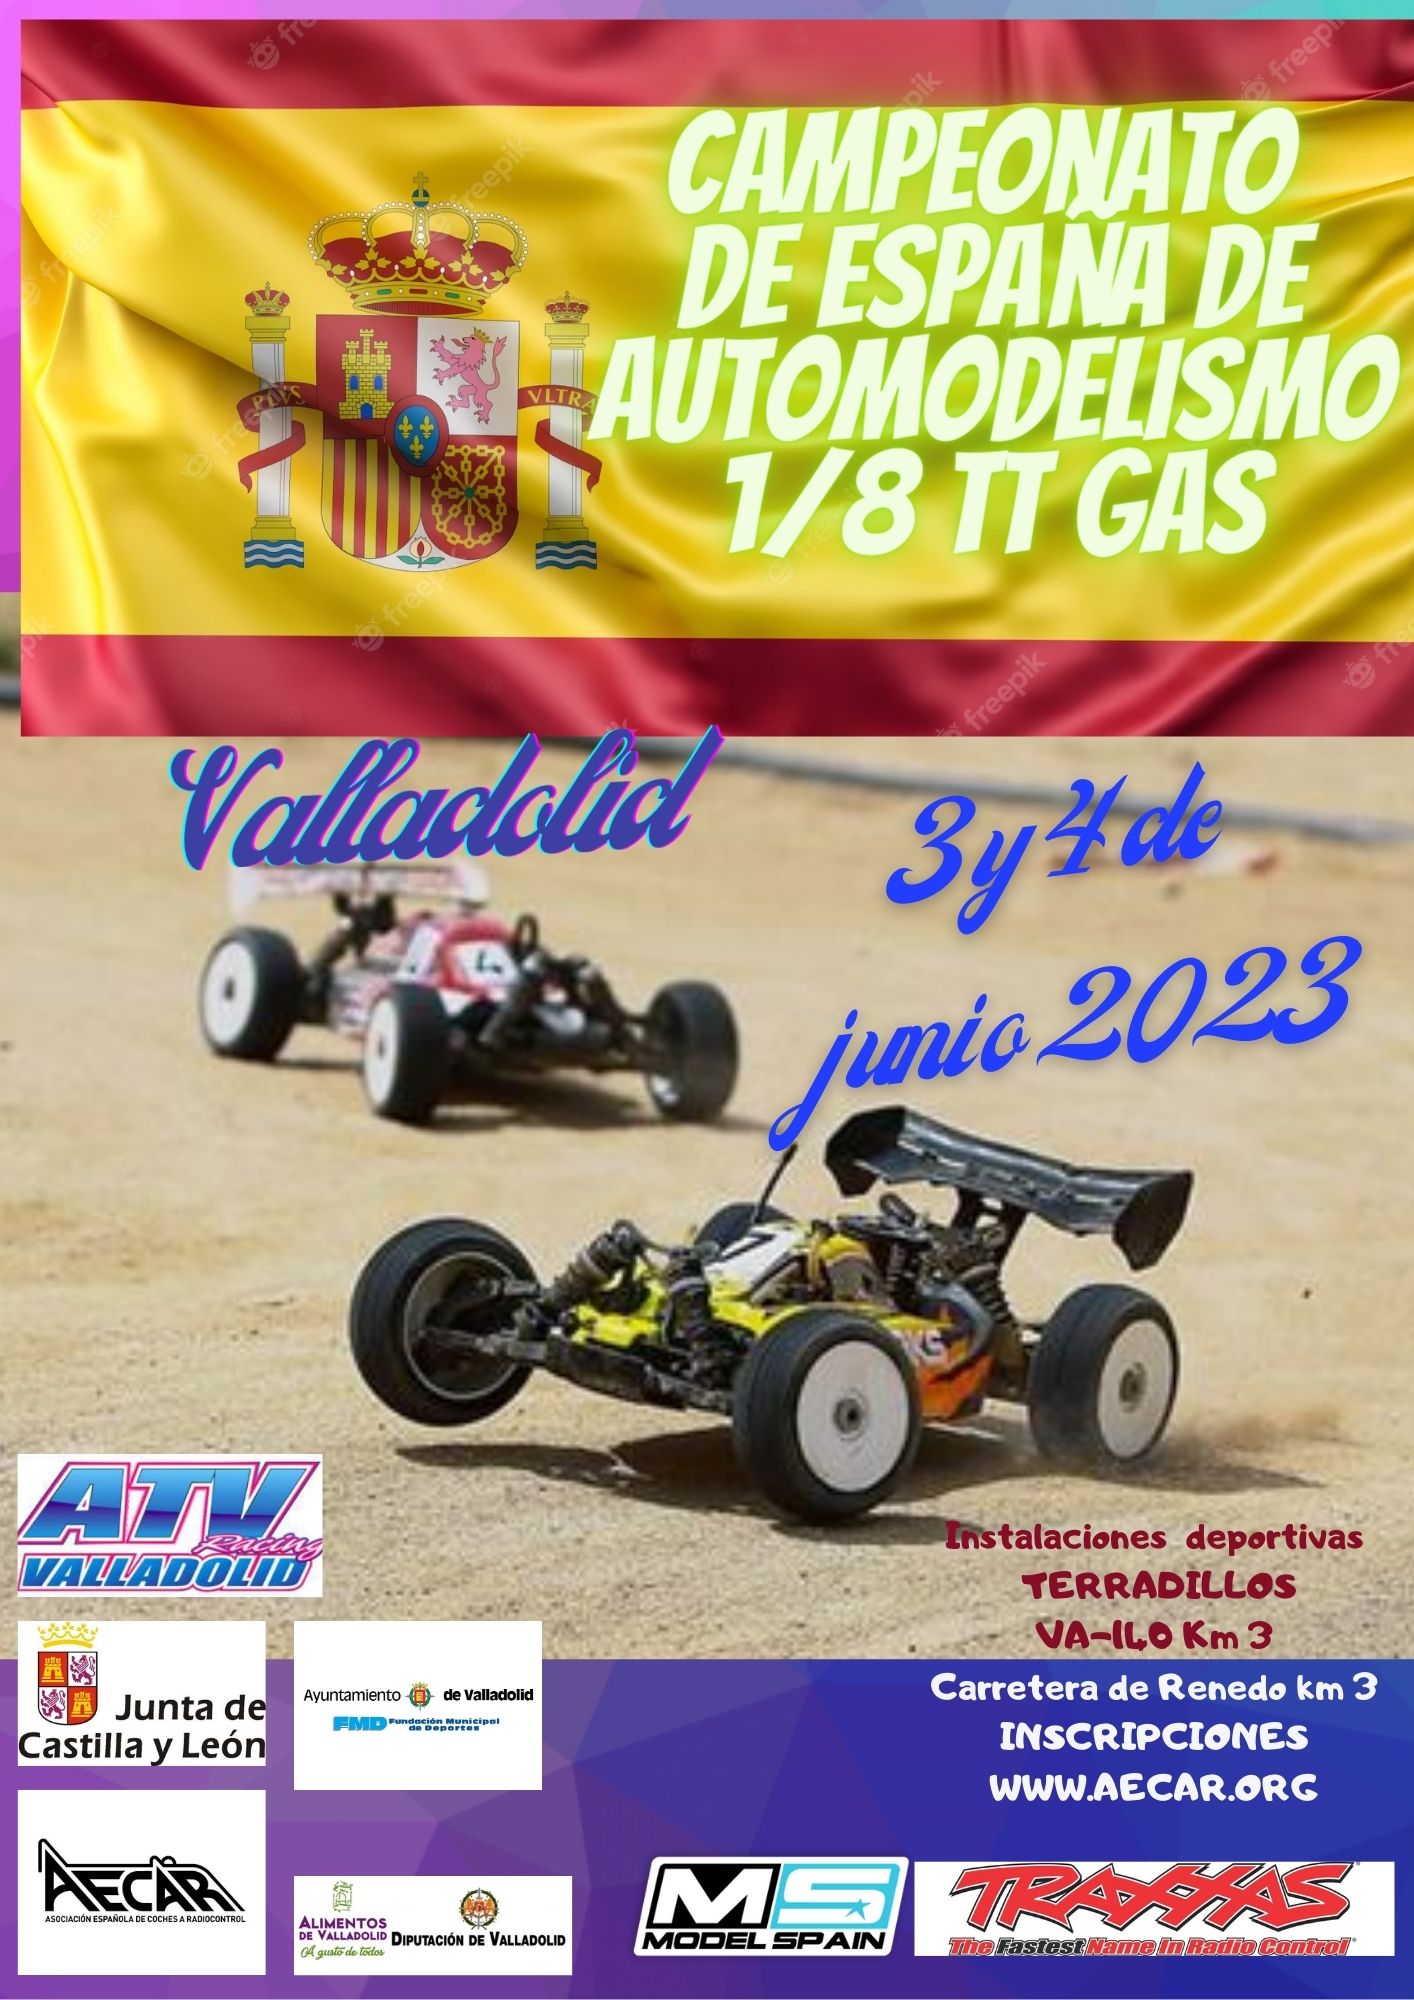 Foto del Campeonato de España de Automodelismo 1/8 TT GAS